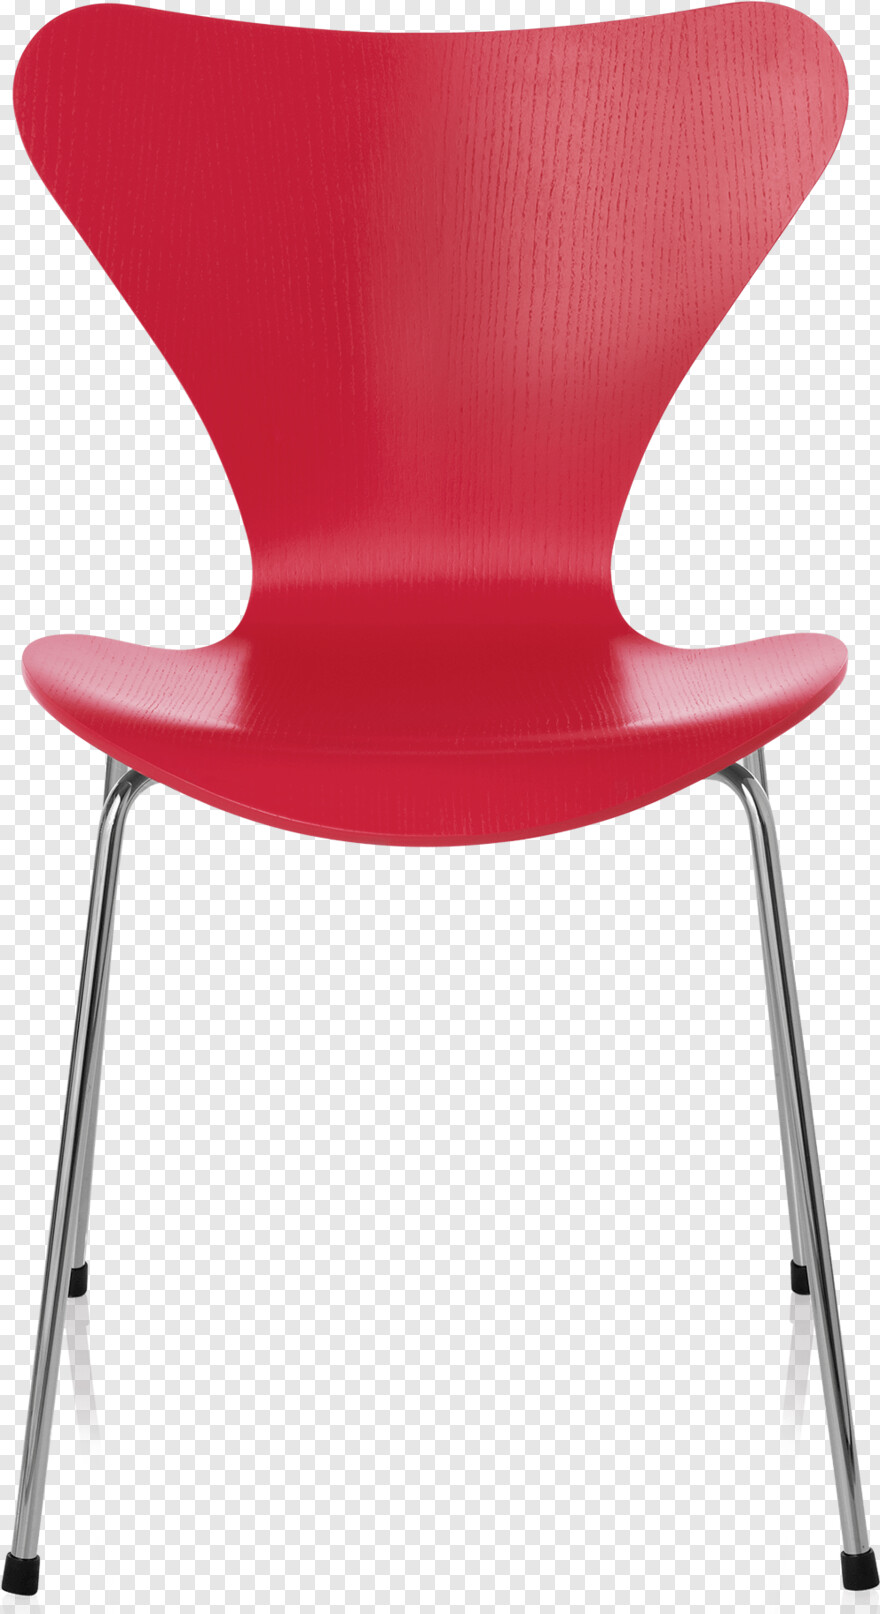 chair # 469788